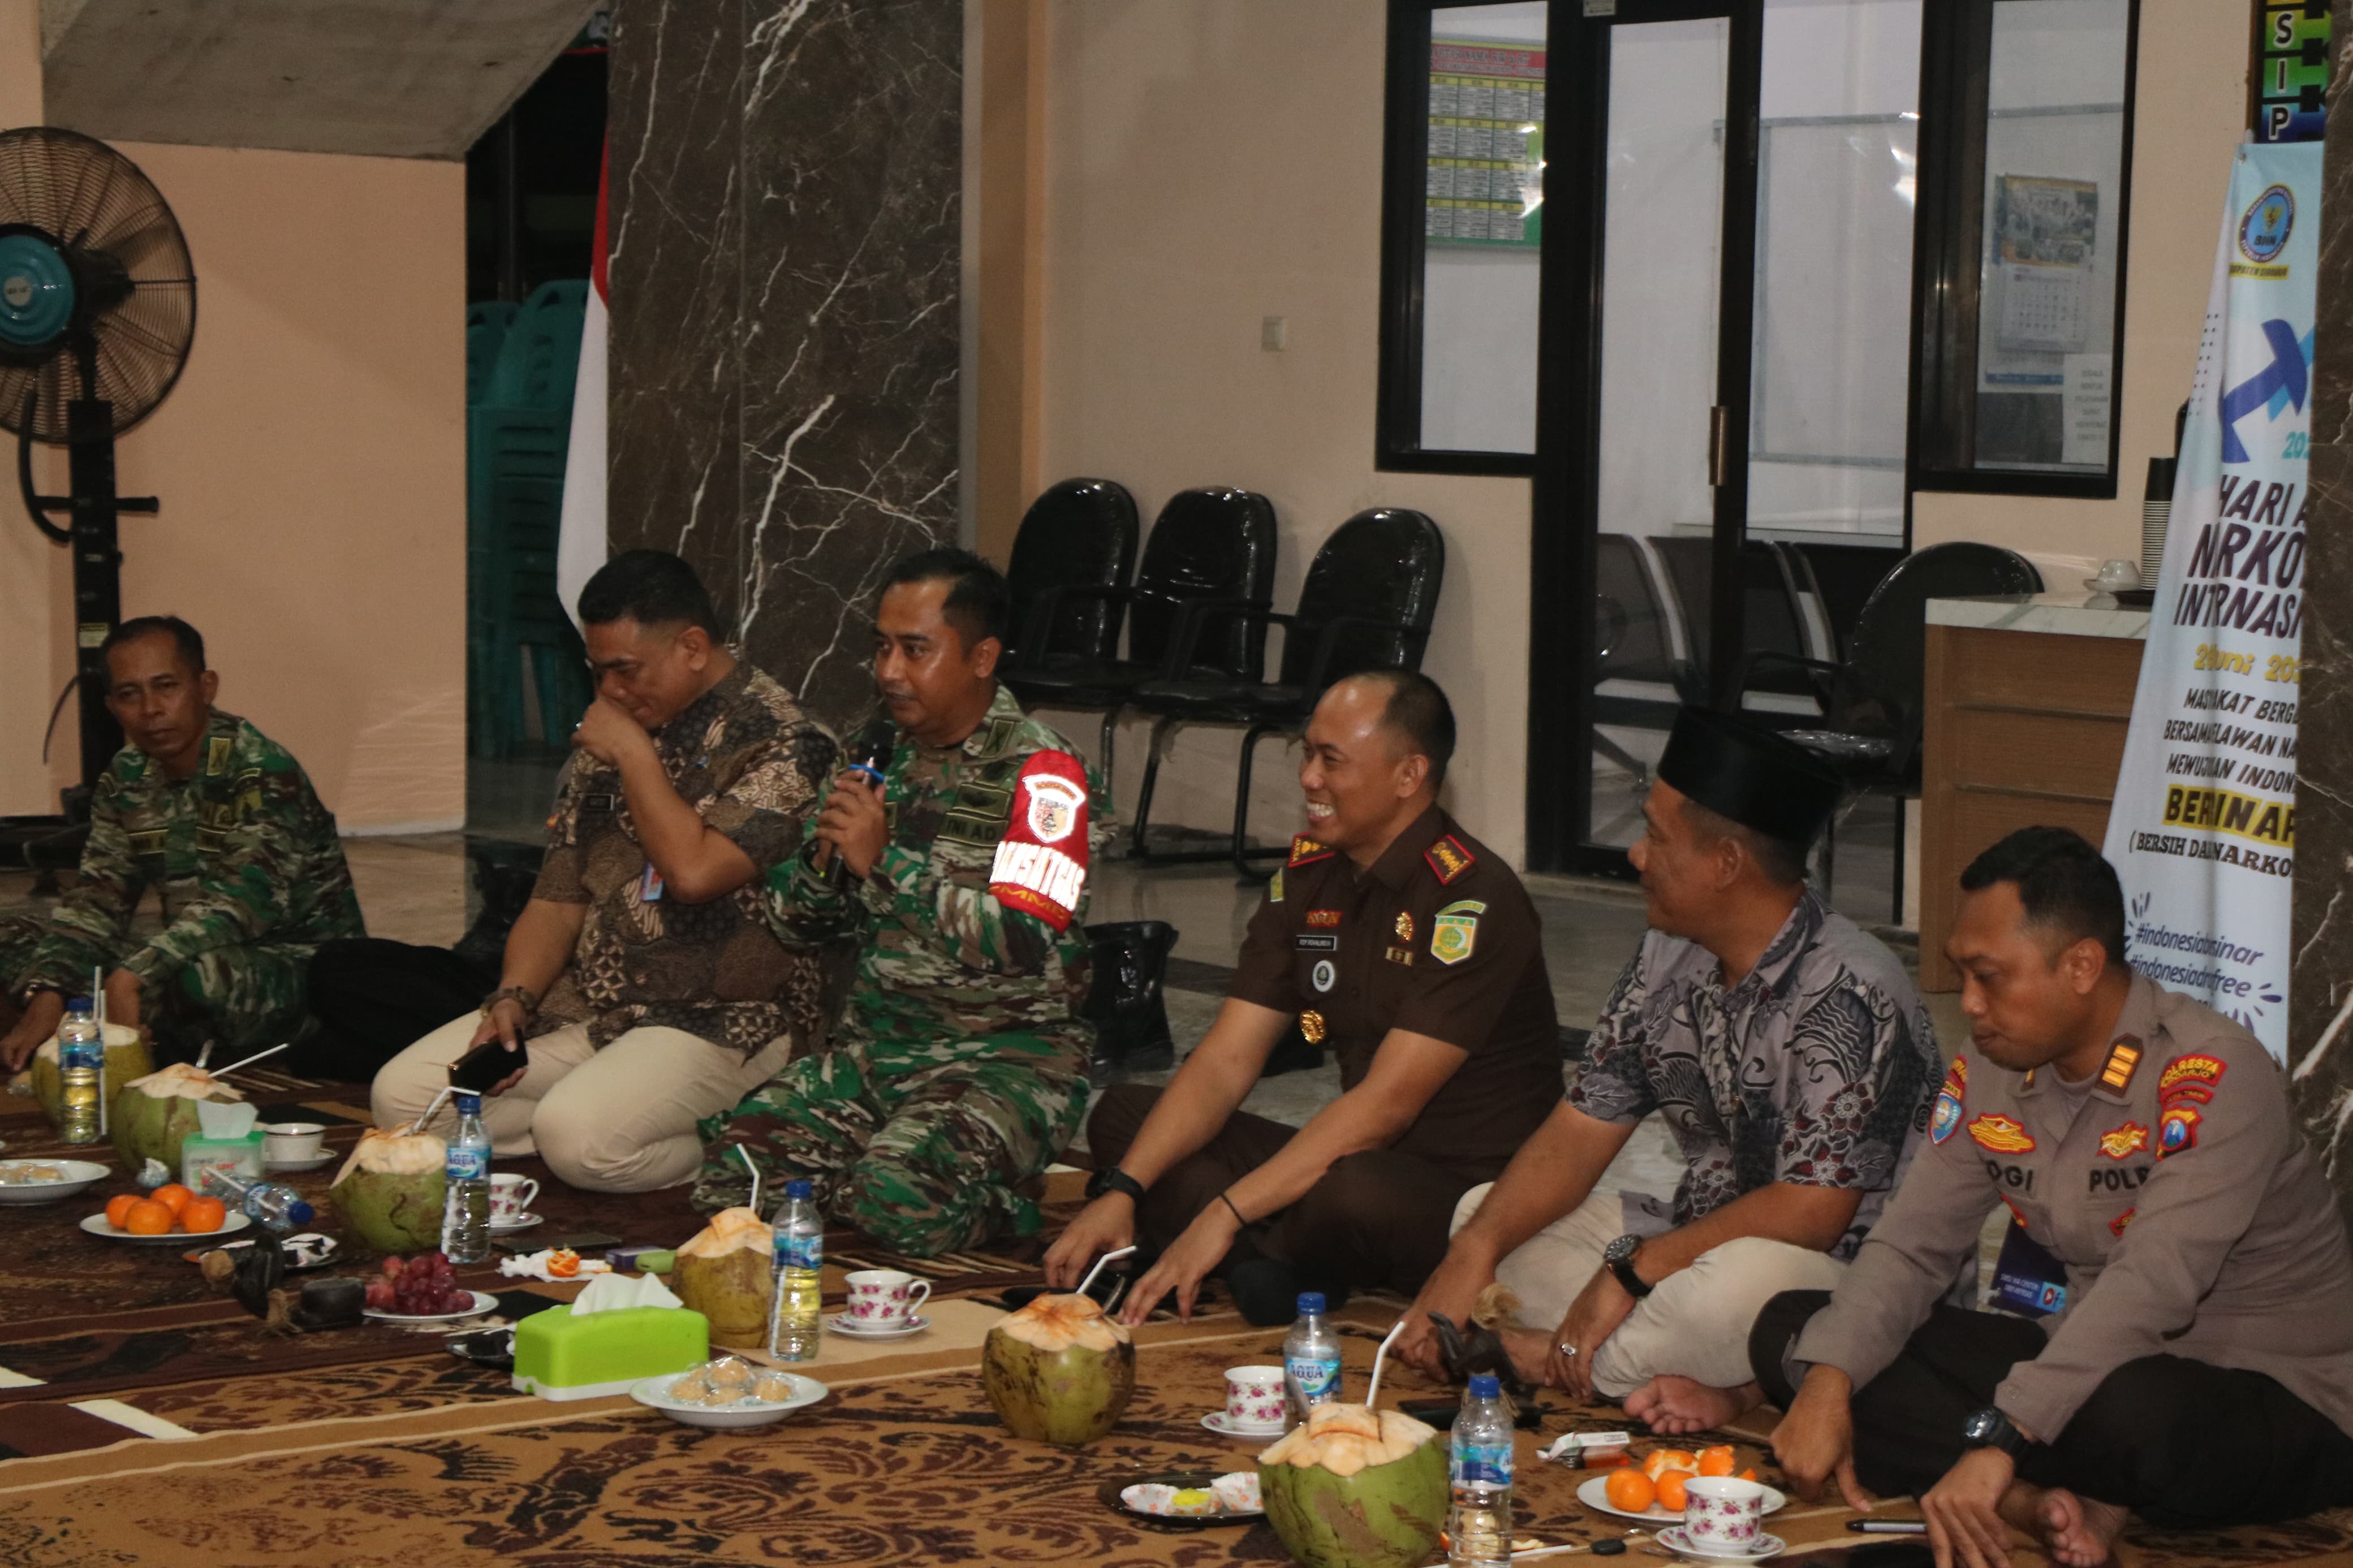 Cangkruan Satgas TMMD Ke-120 Kodim 0816/Sidoarjo, Kuatkan Sinergi TNI dan Masyarakat di Desa Penambangan